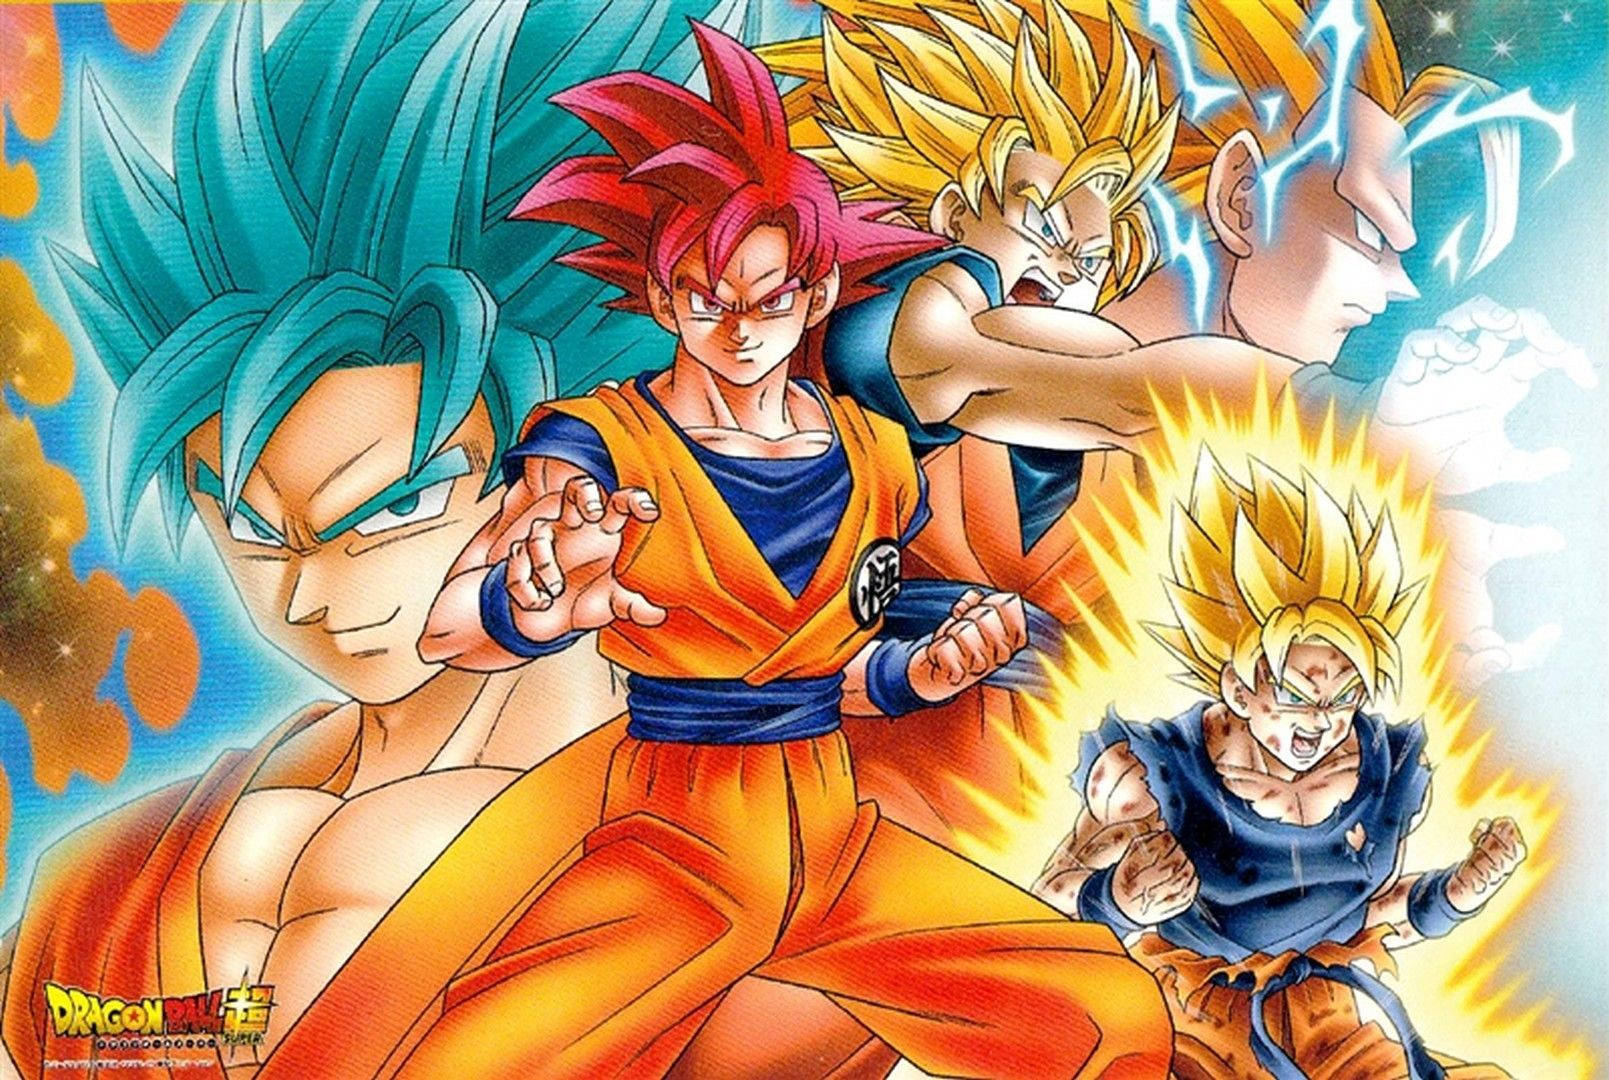 Goku Using His Super Saiyan Powers To Tackle The Bad Guys.